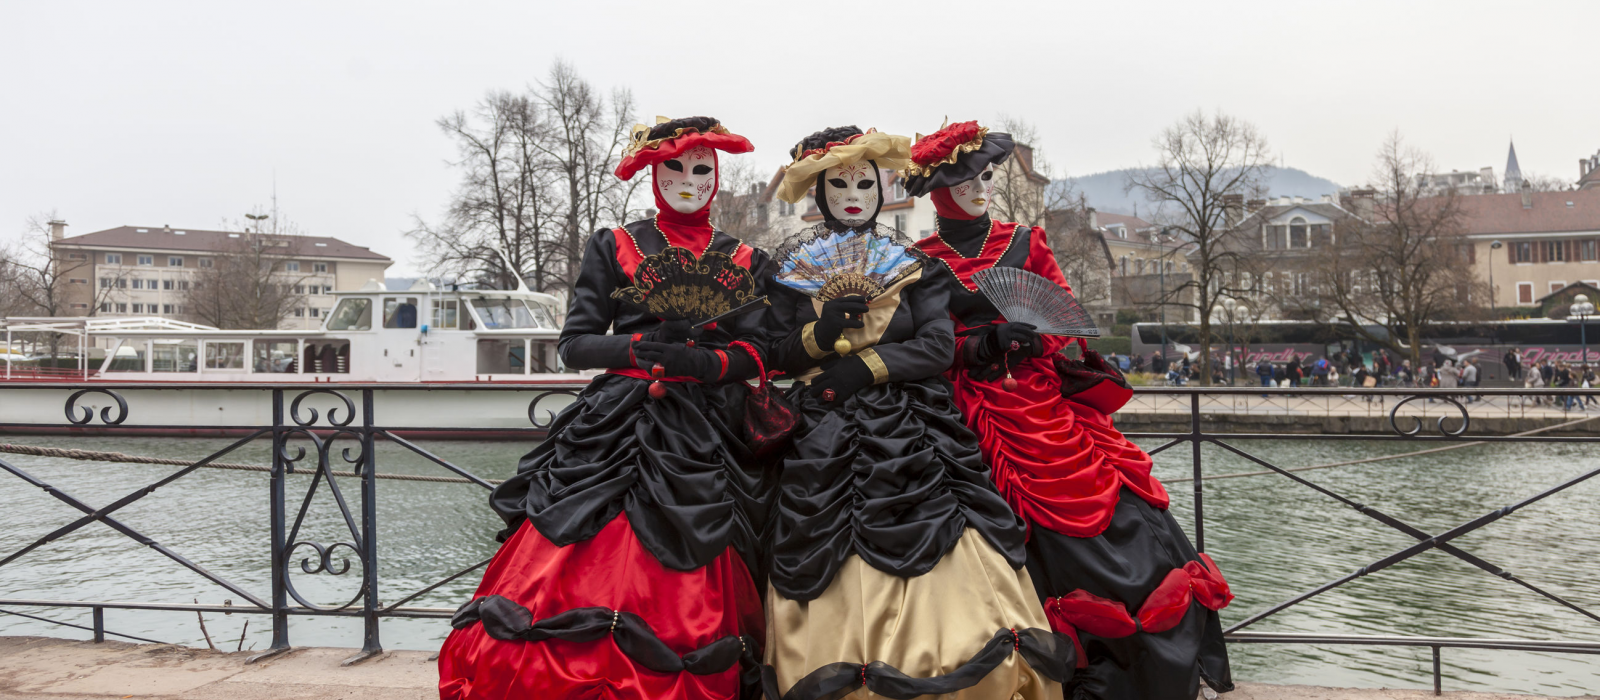 Les lieux les plus animés pour fêter un carnaval en France